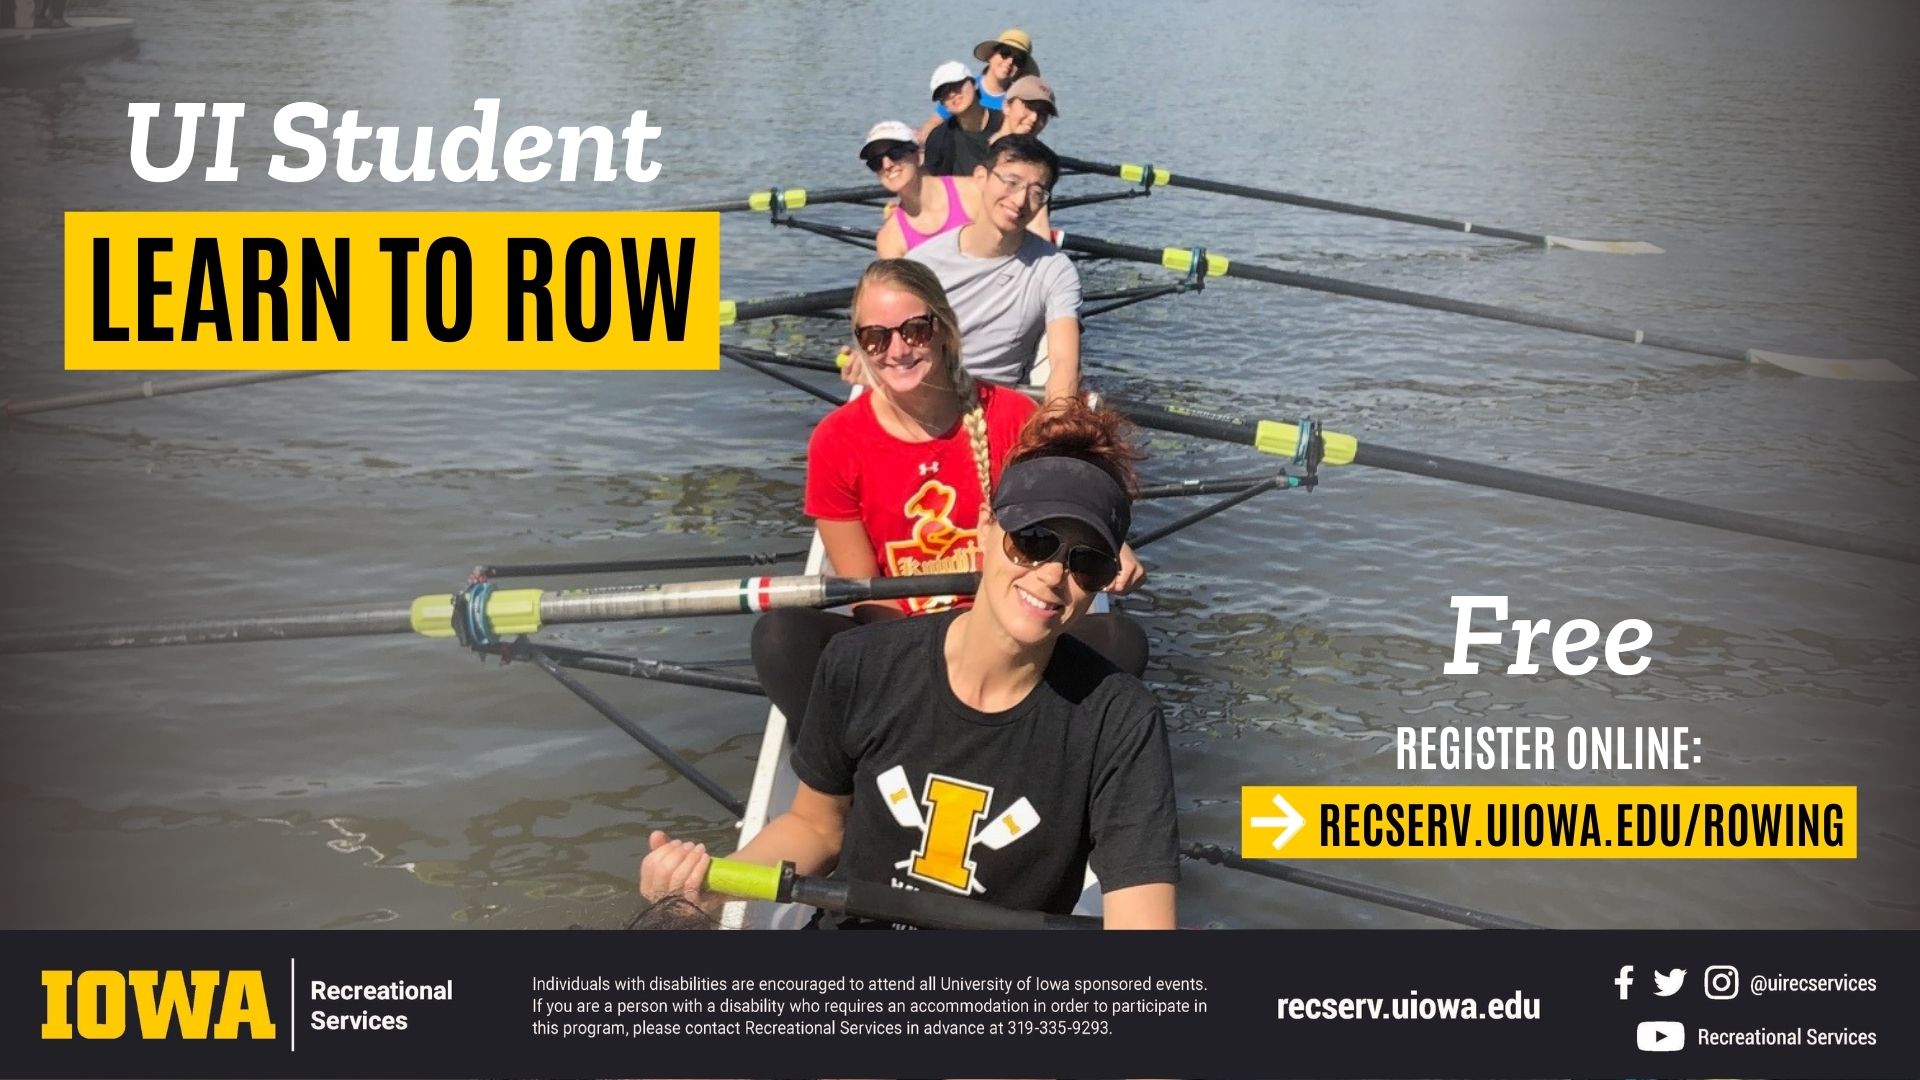 UI Student Learn to Row Free Register online: recserv.uiowa.edu/rowing